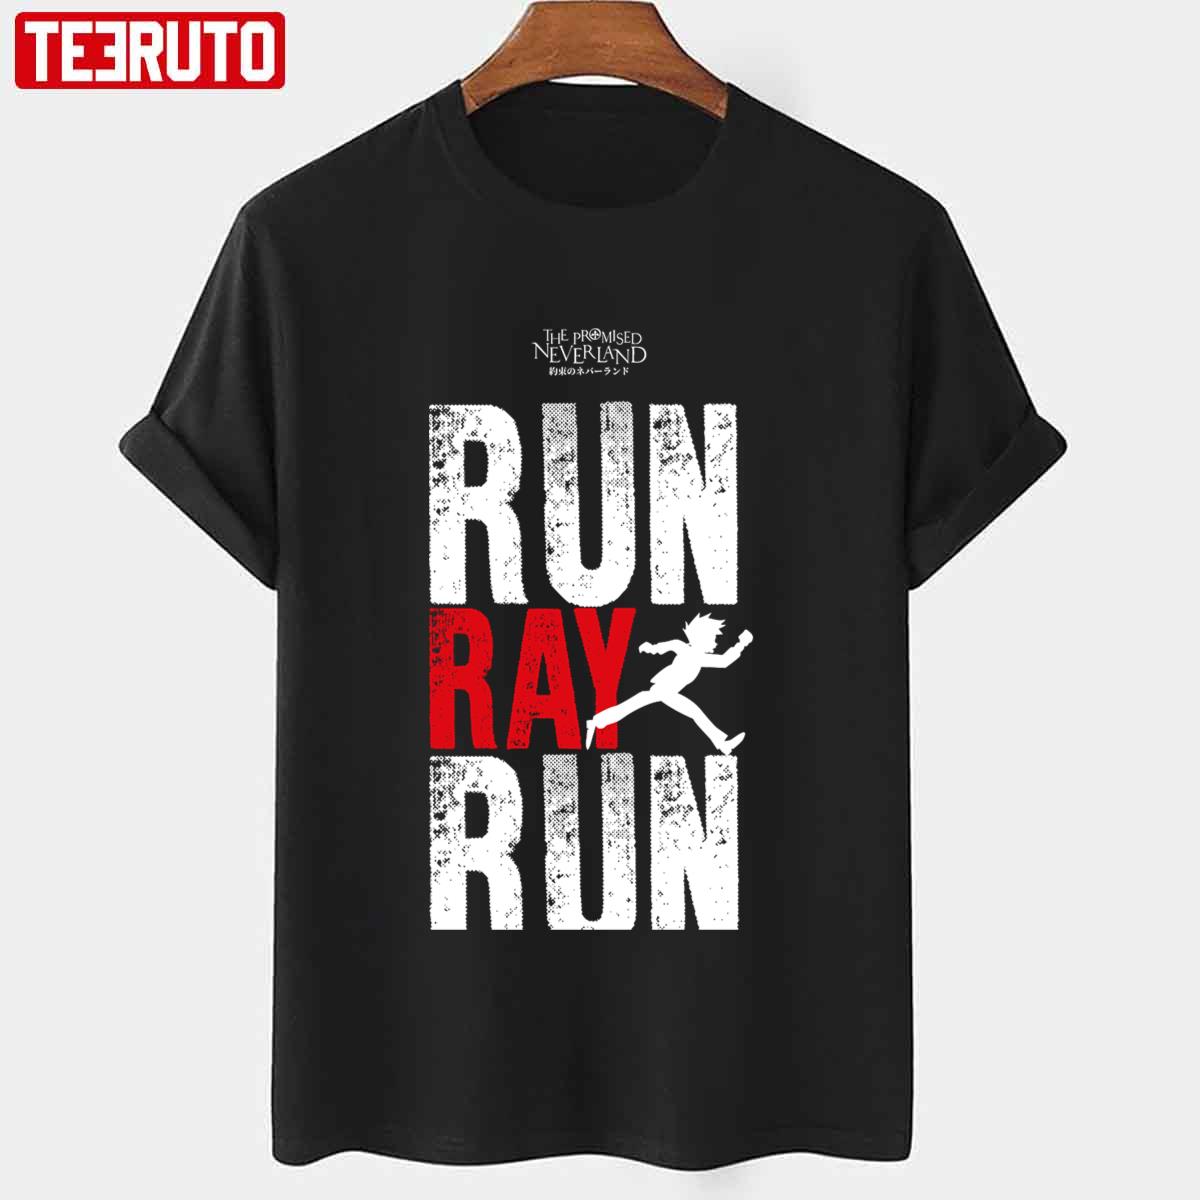 Grunge The Promised Neverland Run Ray Run Unisex T-shirt